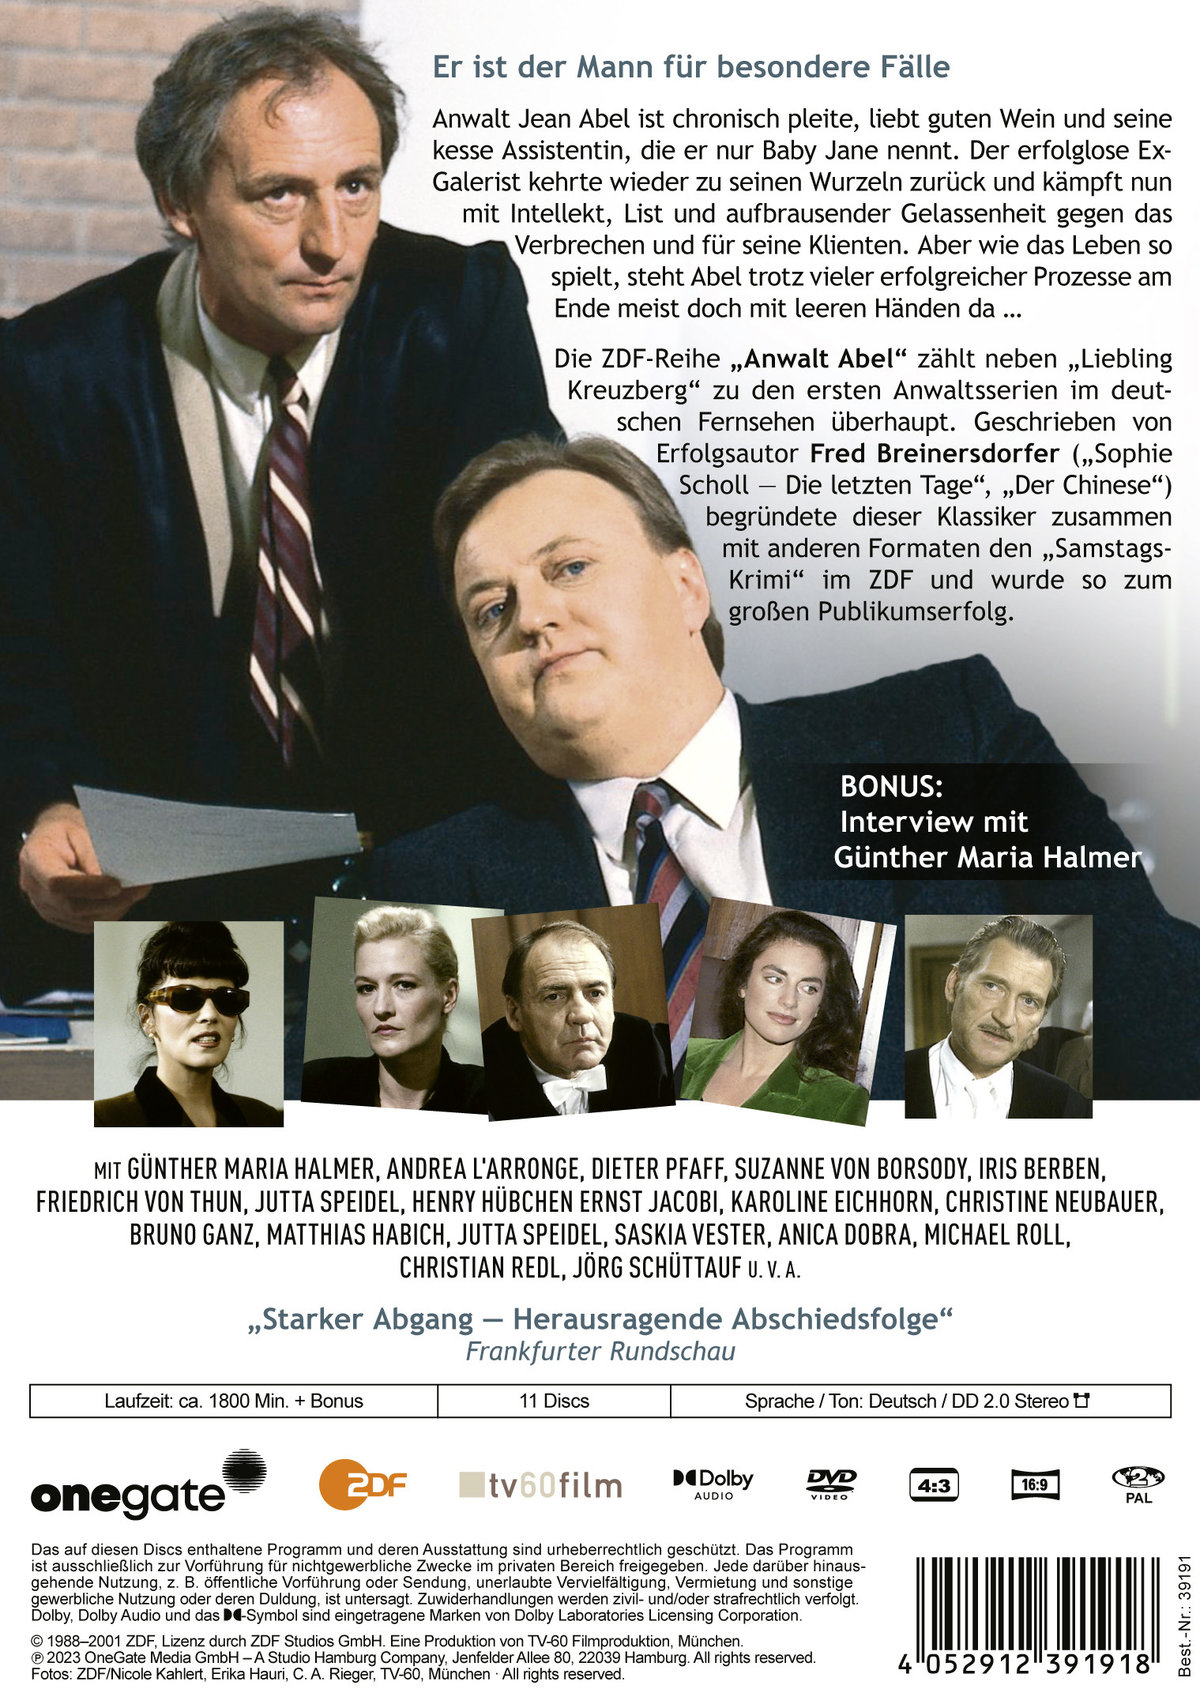 Anwalt Abel - Die komplette Serie  [11 DVDs]  (DVD)